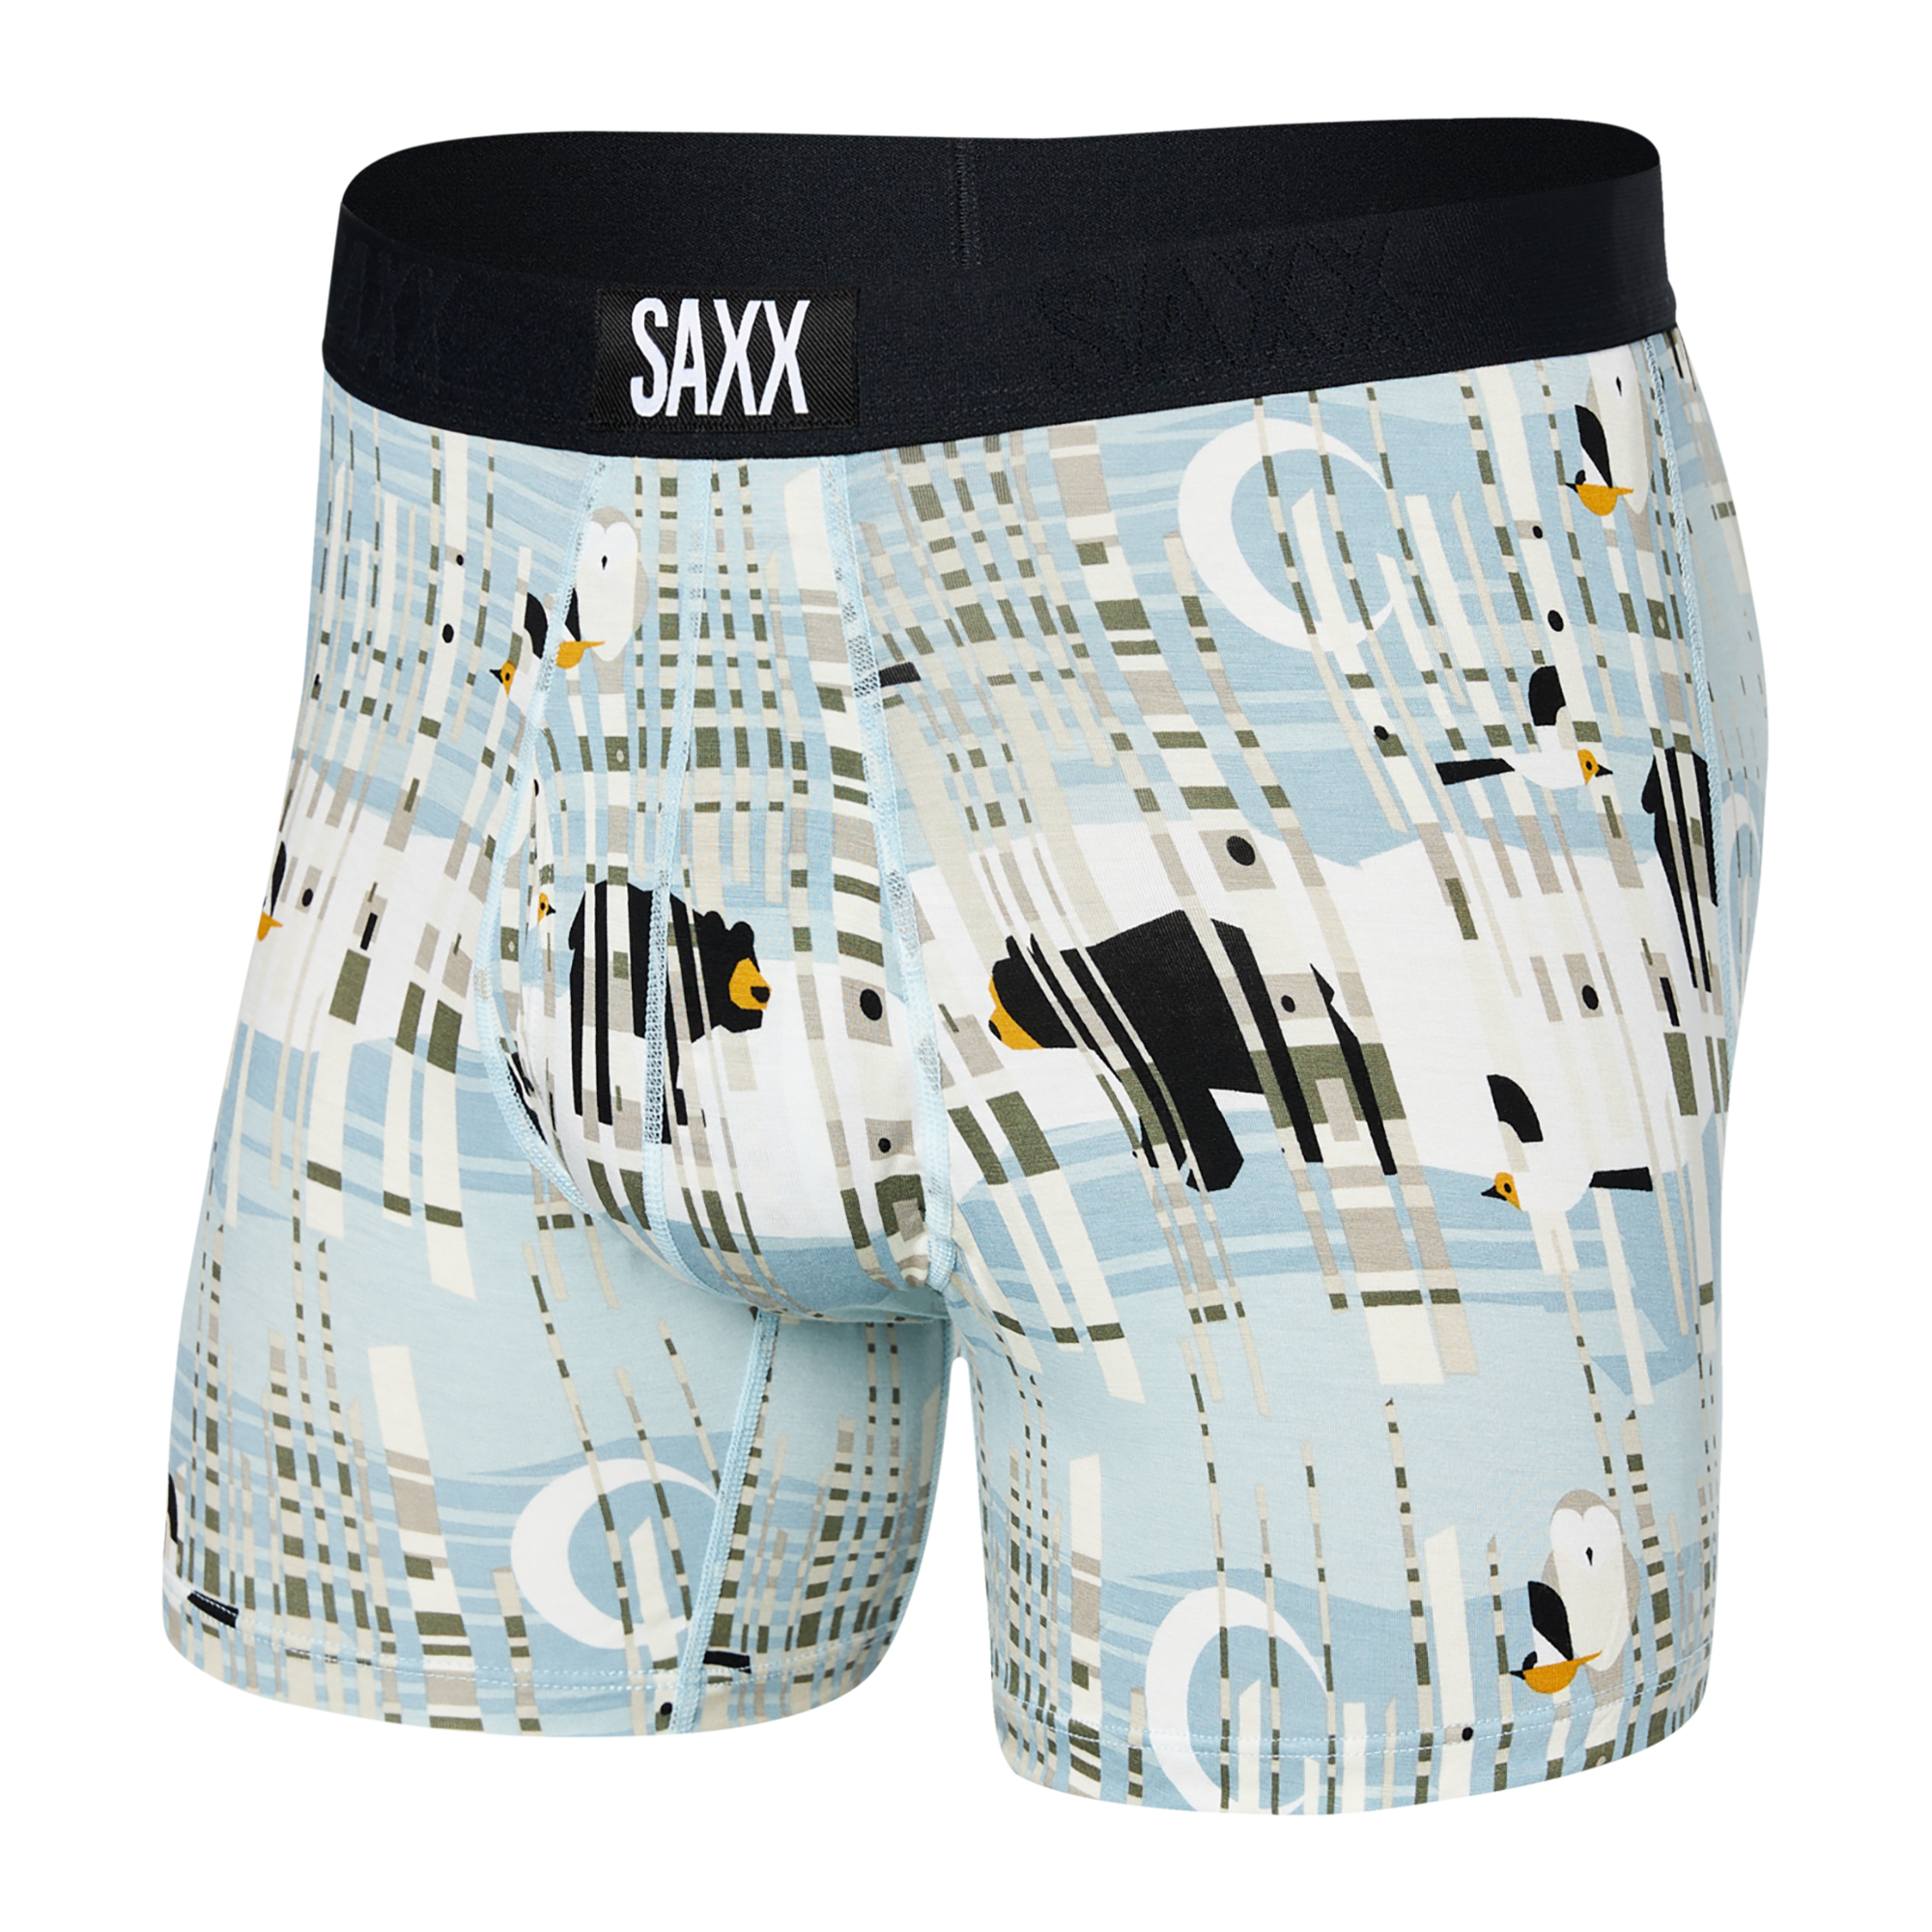 Boxer Ultra Brief Fly | Saxx